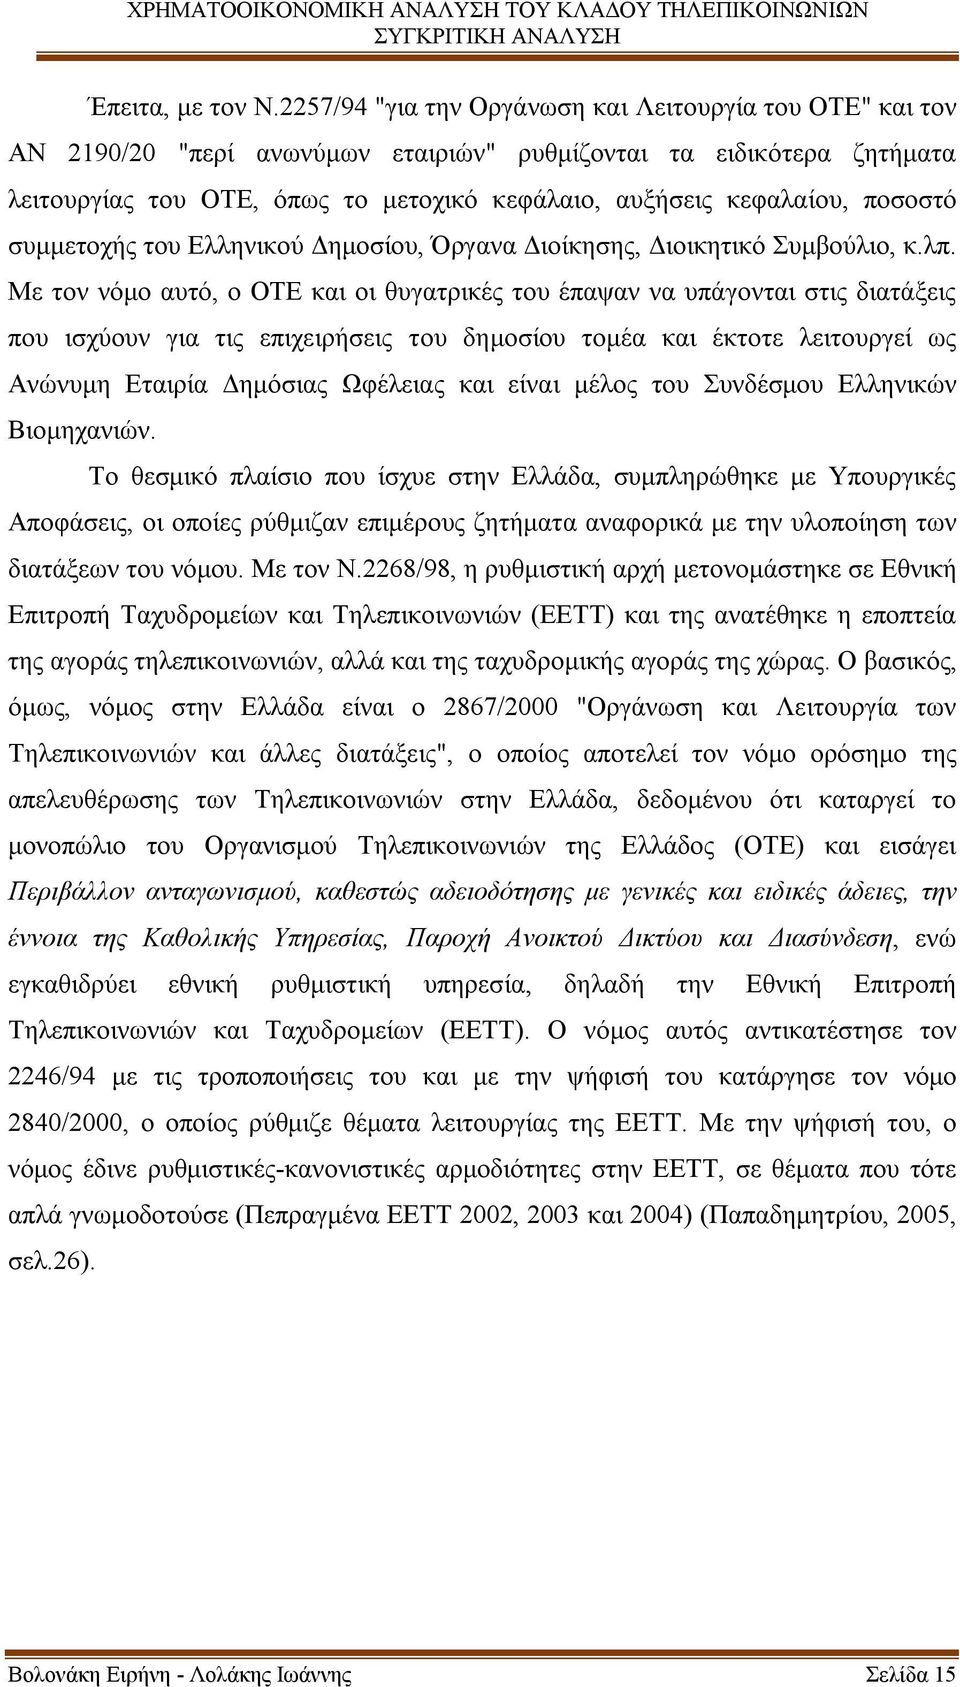 ποσοστό συμμετοχής του Ελληνικού Δημοσίου, Όργανα Διοίκησης, Διοικητικό Συμβούλιο, κ.λπ.